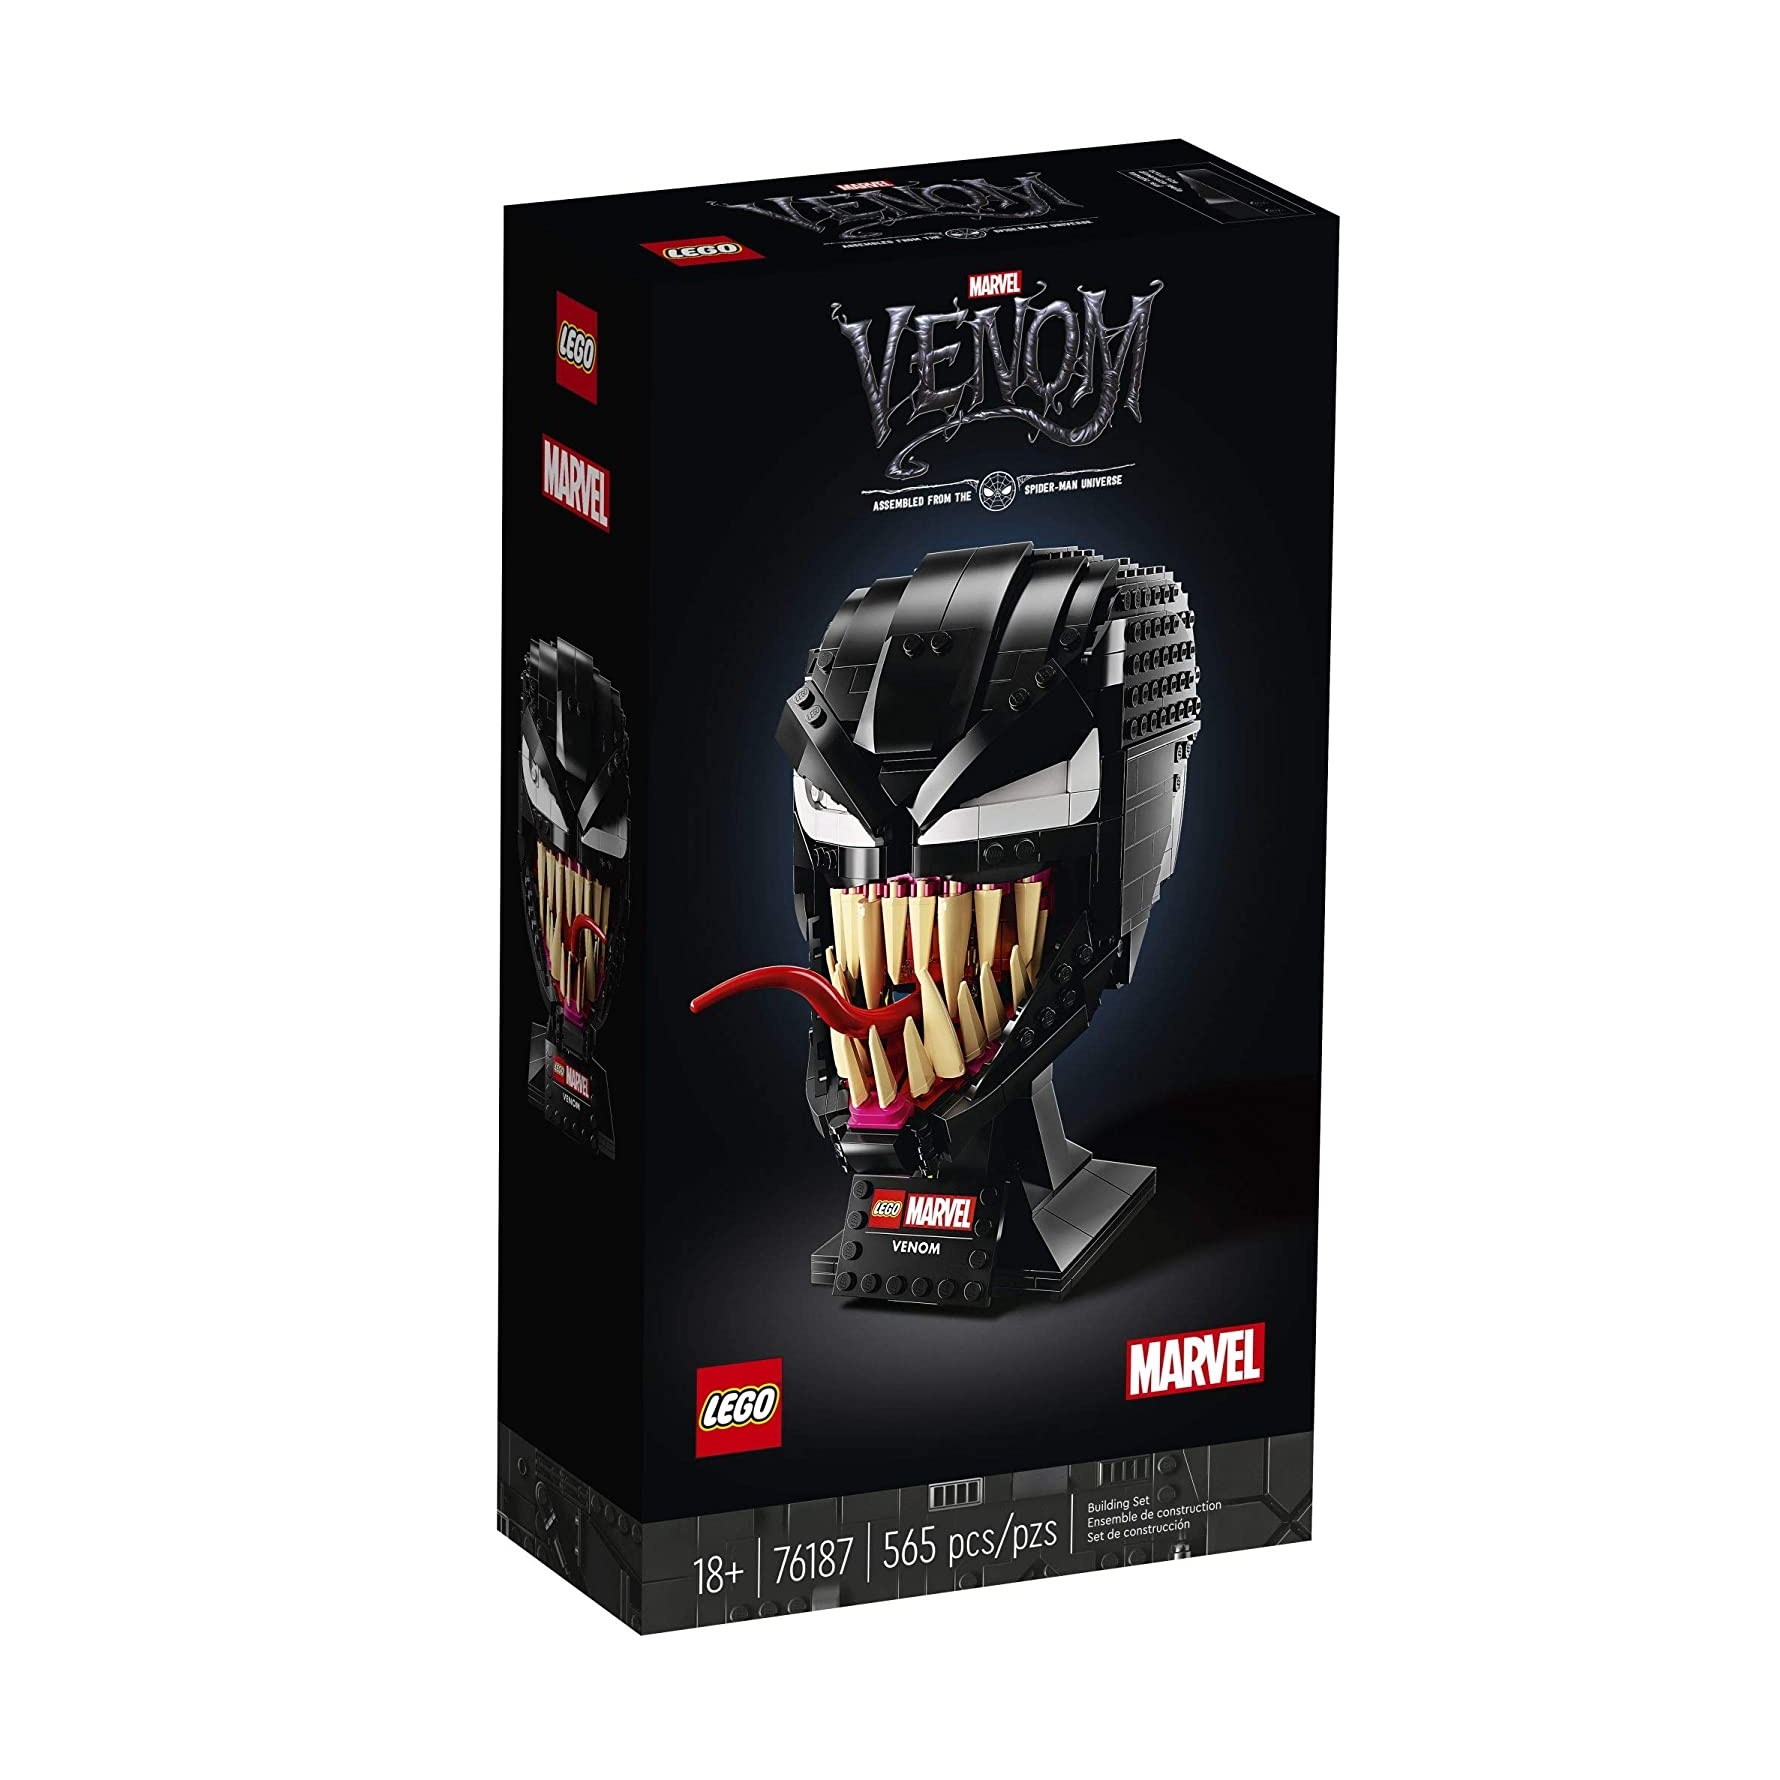 لگو مدل Marvel کد 76187 Venom